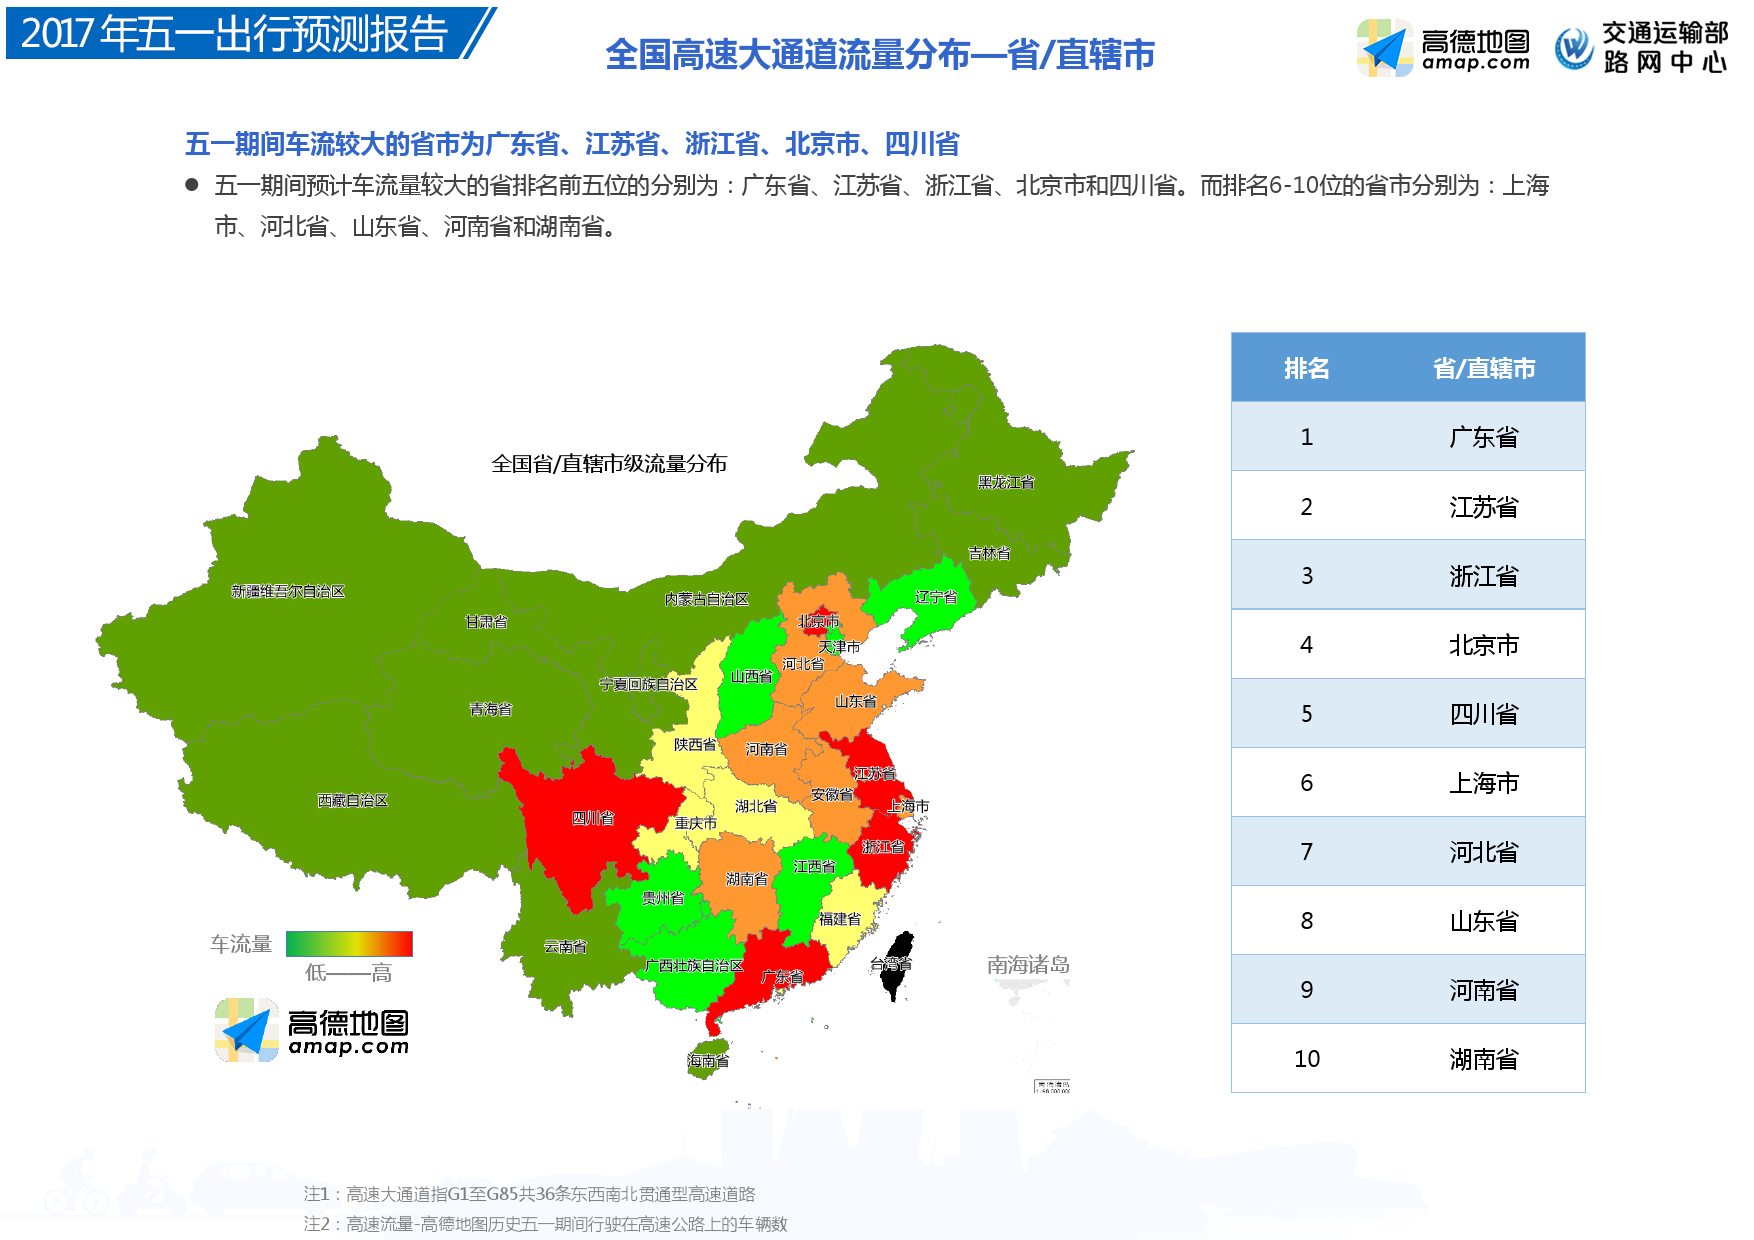 高德地图五一出行预测数据报告:东莞深圳北京高速最拥堵